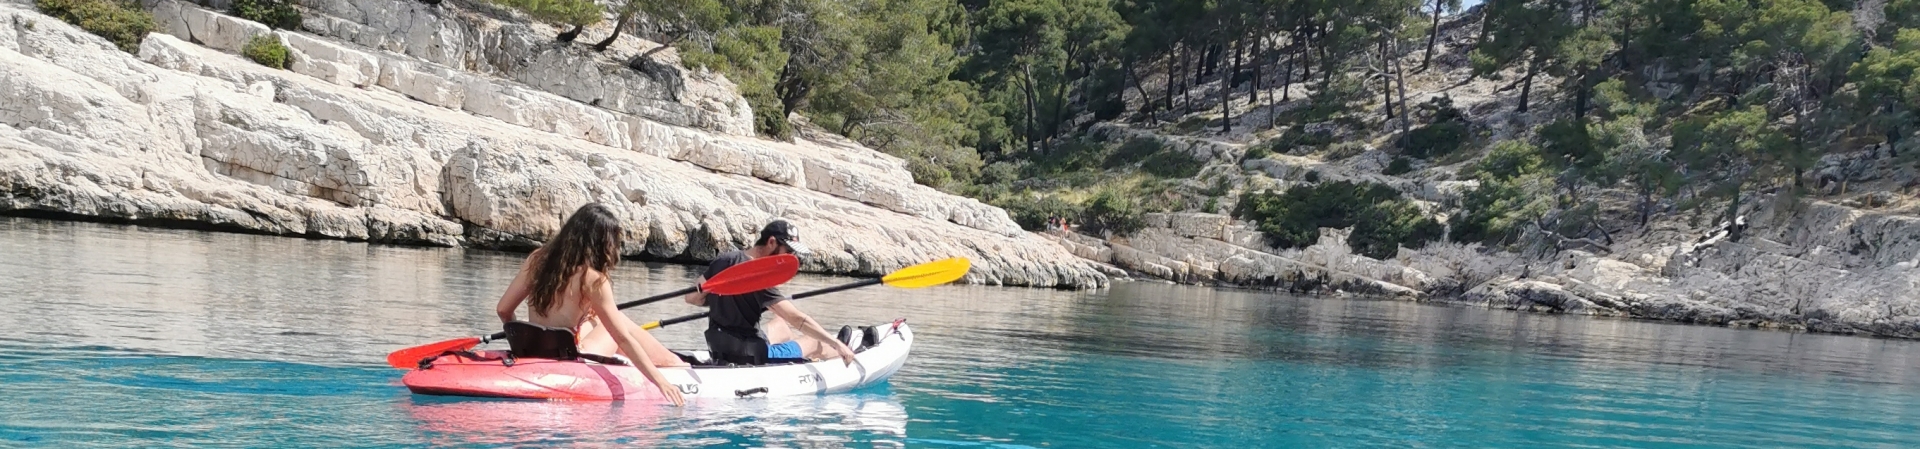 Calanque de Port-Pin en kayak